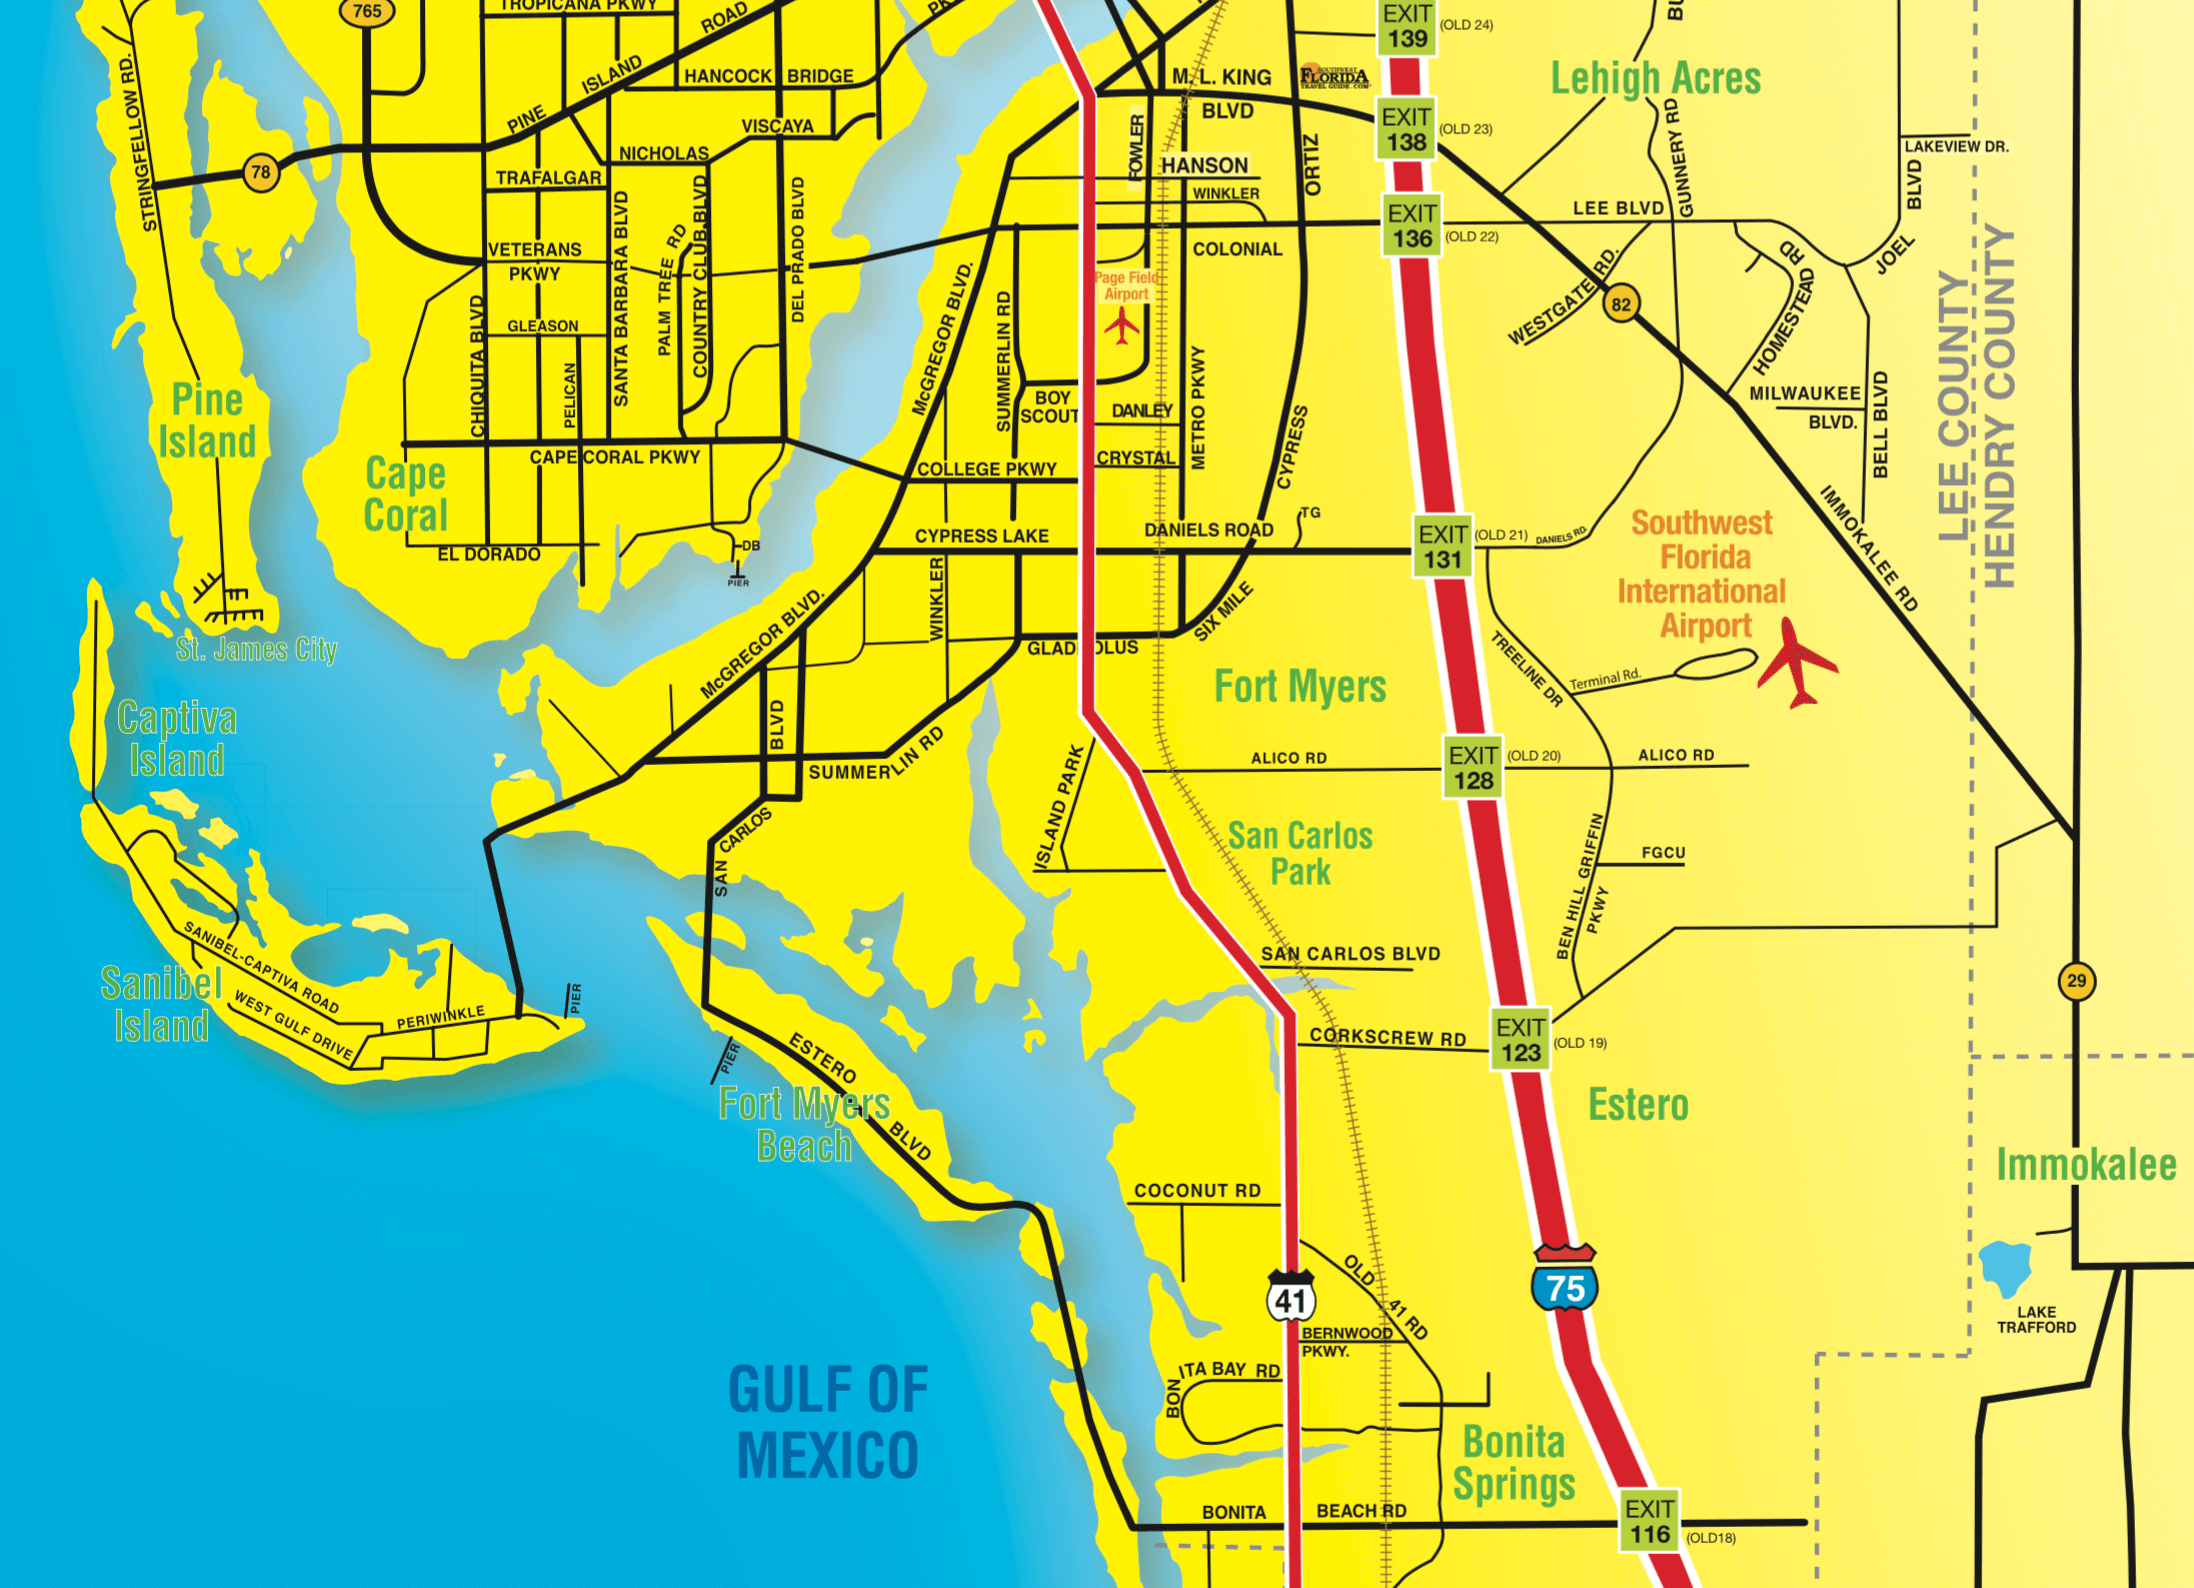 Florida Maps - Southwest Florida Travel - Map Of Southwest Florida